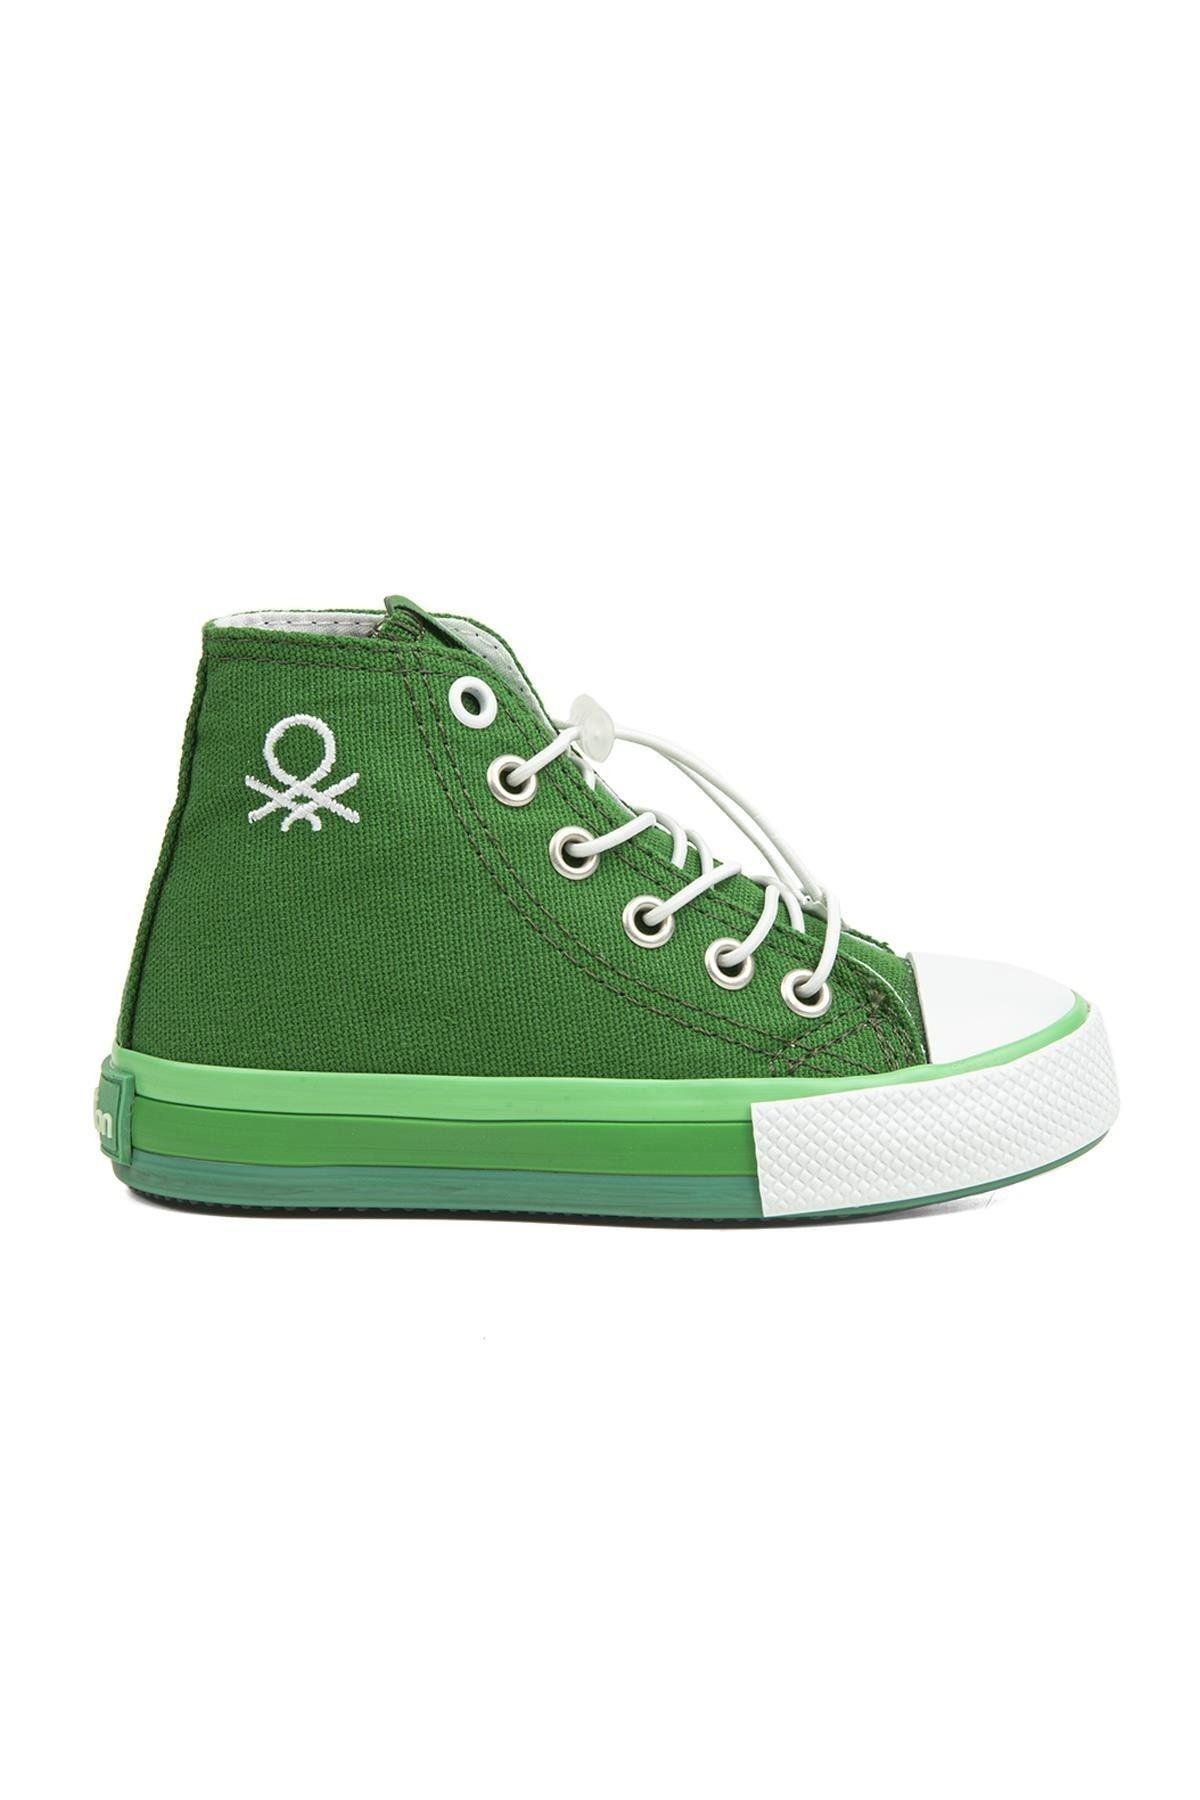 Benetton ® | Bn-30651 - 3394 Yesil - Çocuk Spor Ayakkabı